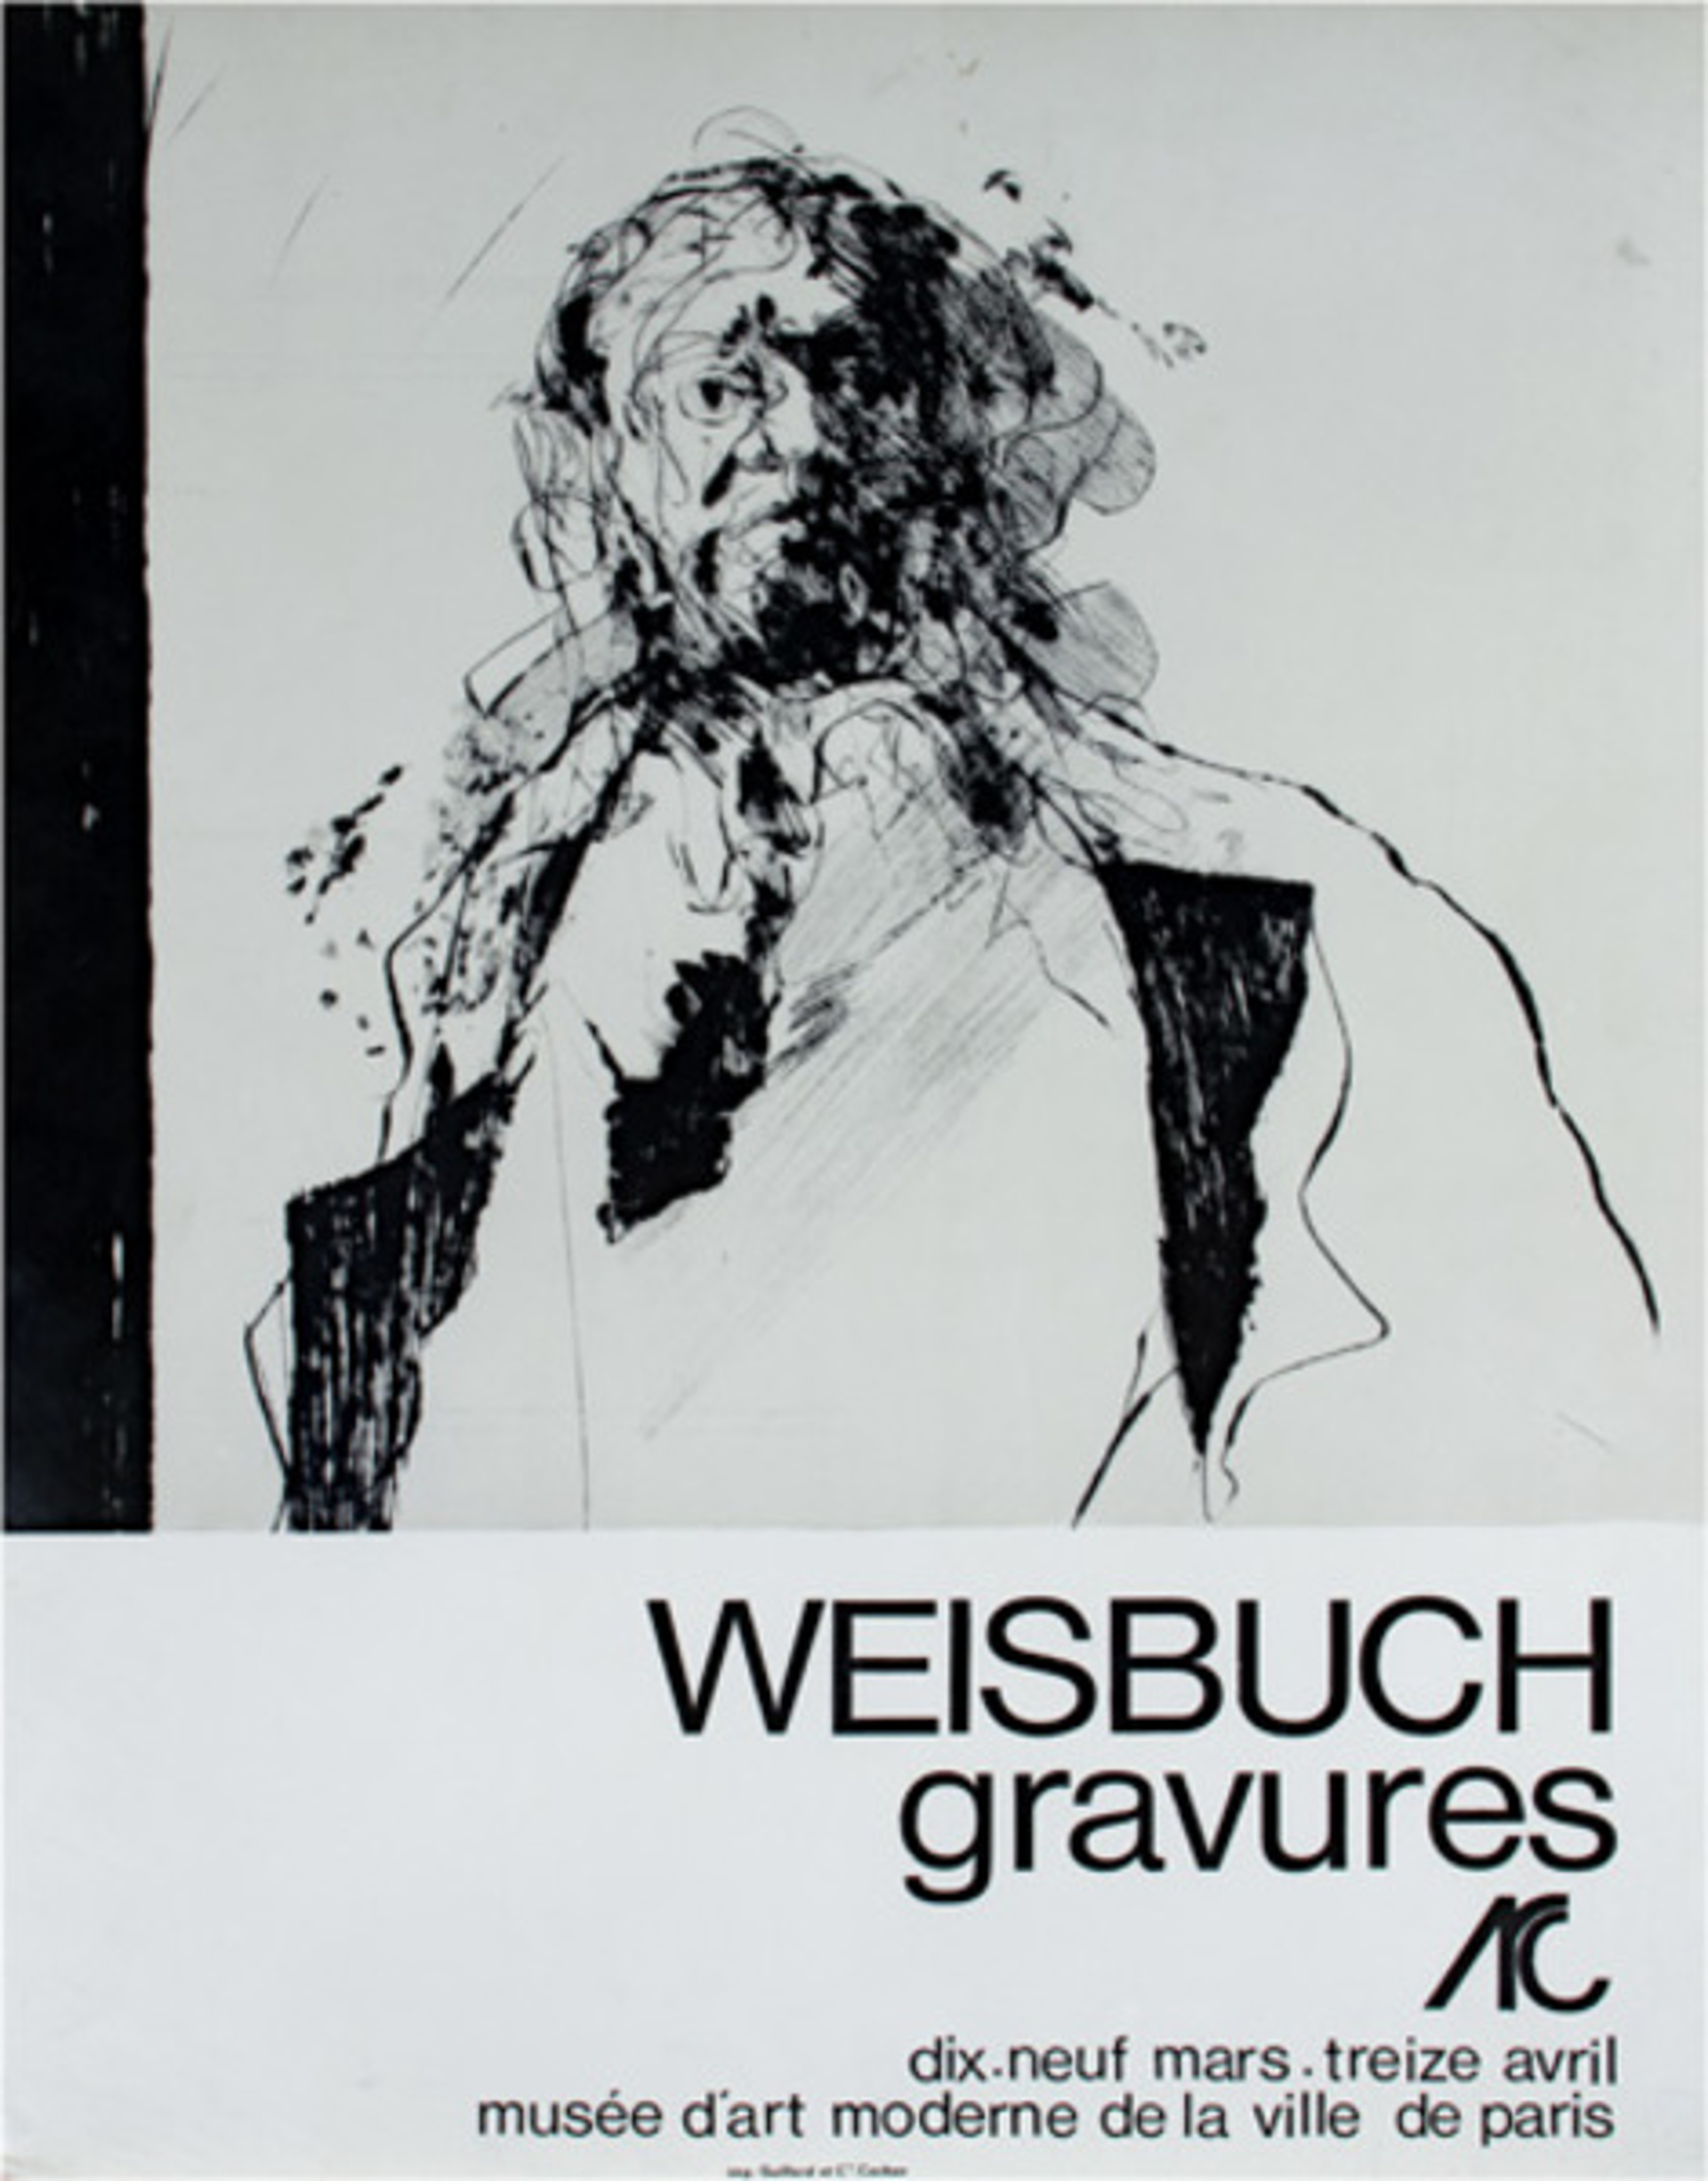 Weisbuch Graveures by Claude Weisbuch